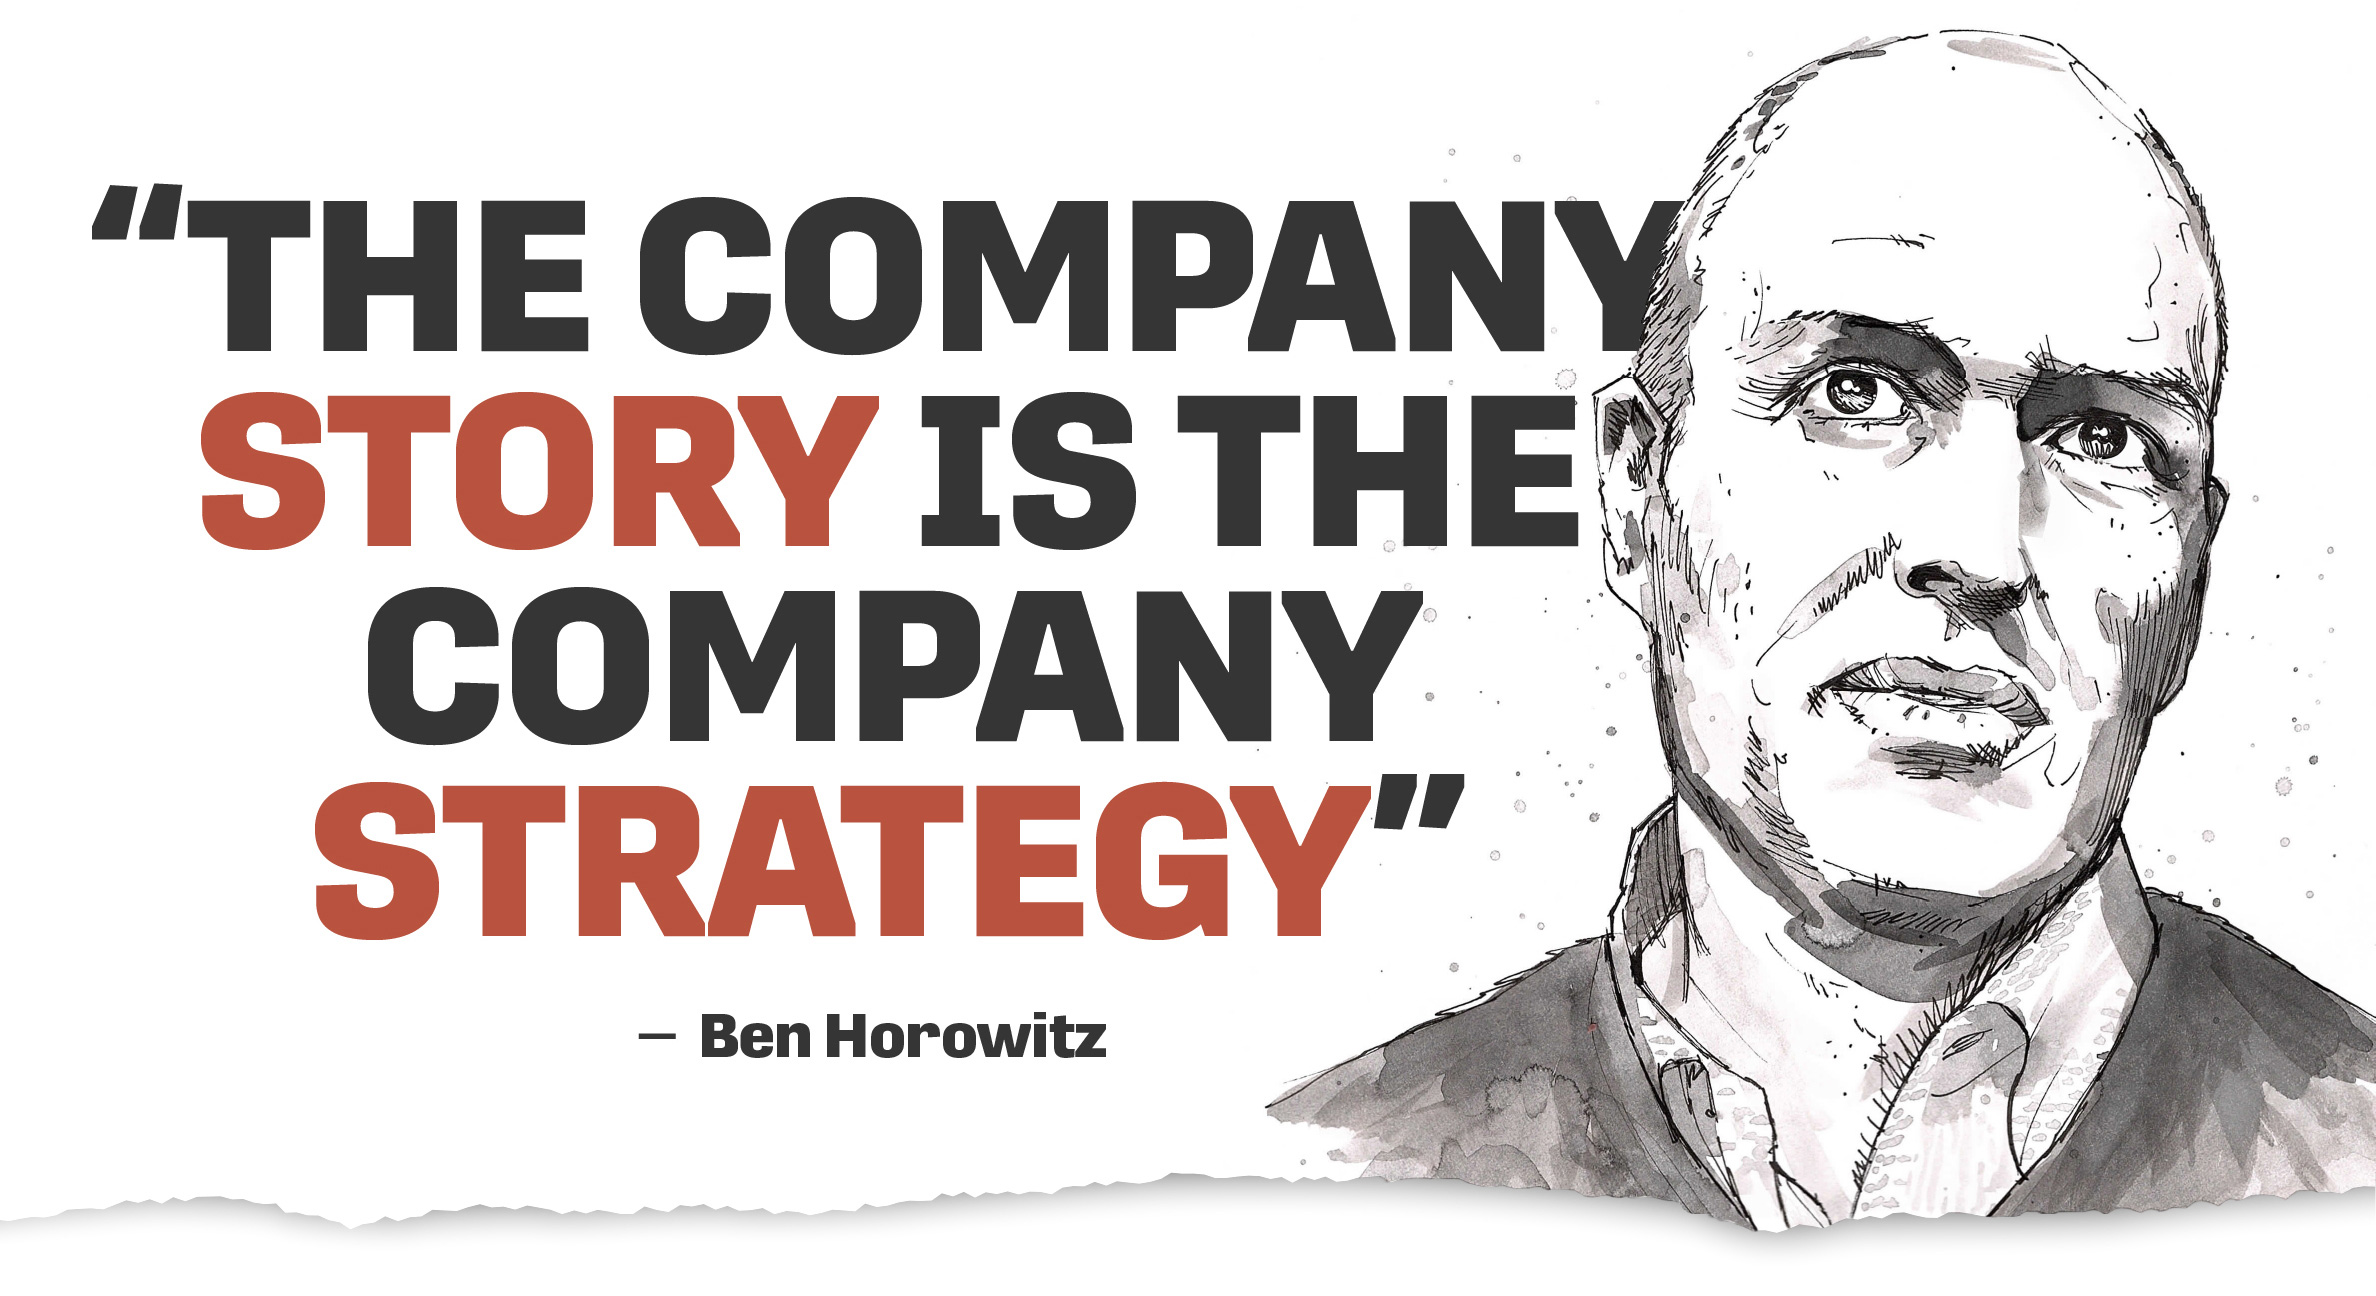 Ben Horowitz Quote